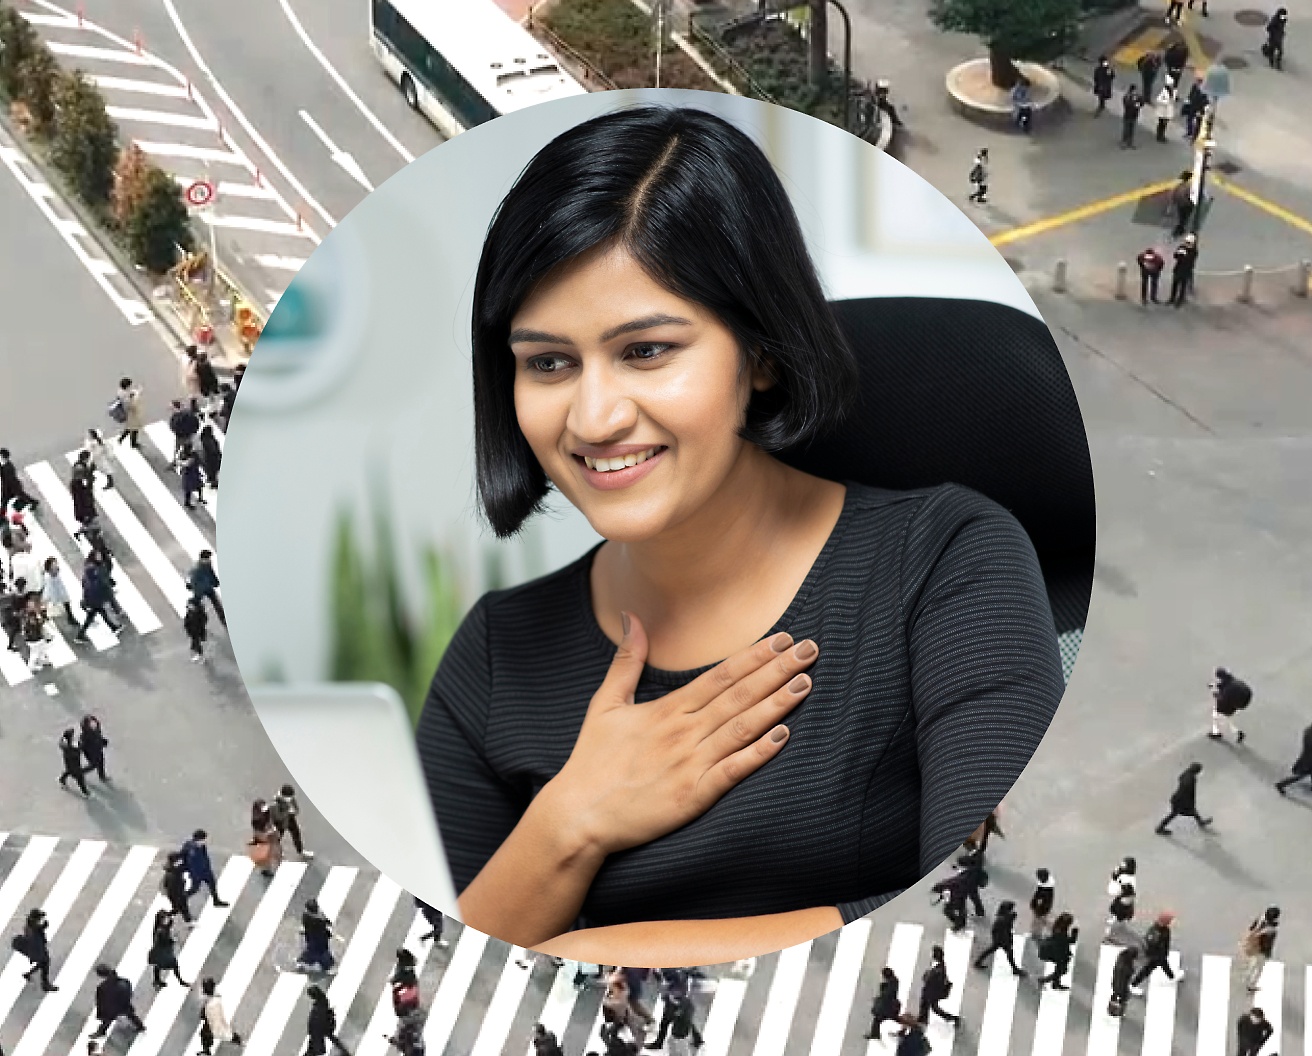 En kvinna håller handen mot bröstet medan hon arbetar på sin bärbara dator, med en vägkorsning med människor som passerar förbi som bakgrund